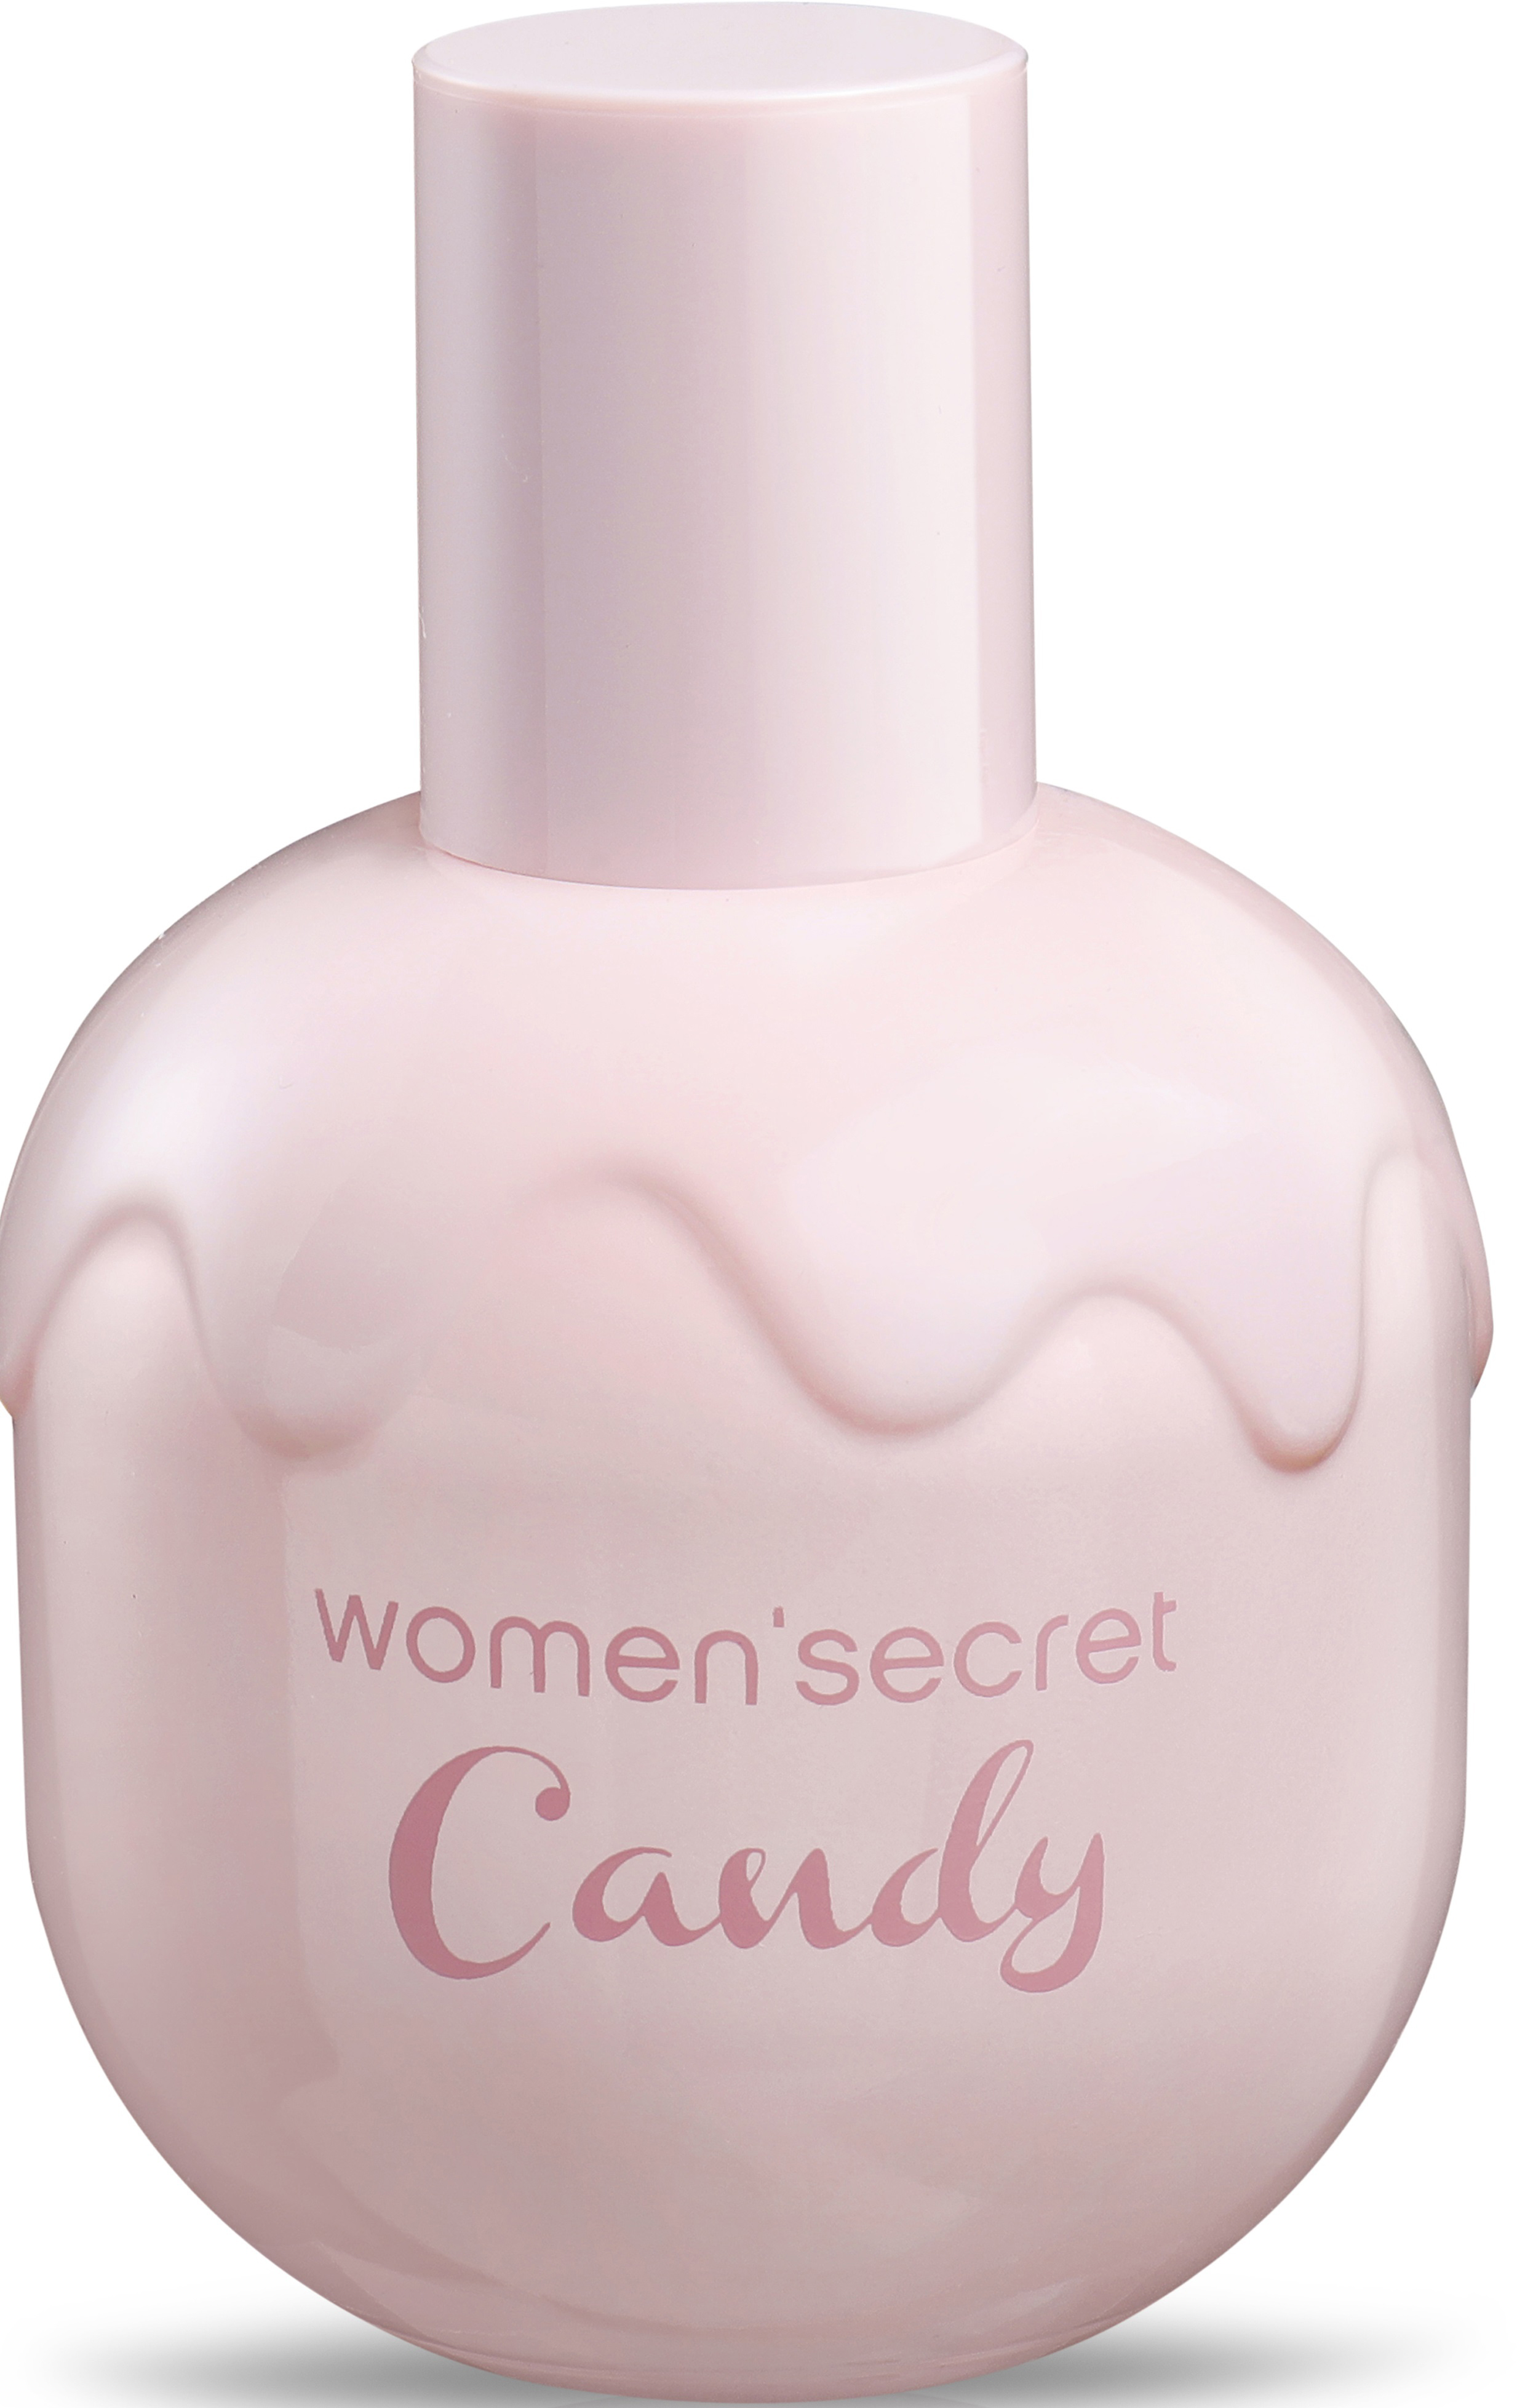 women'secret candy temptation